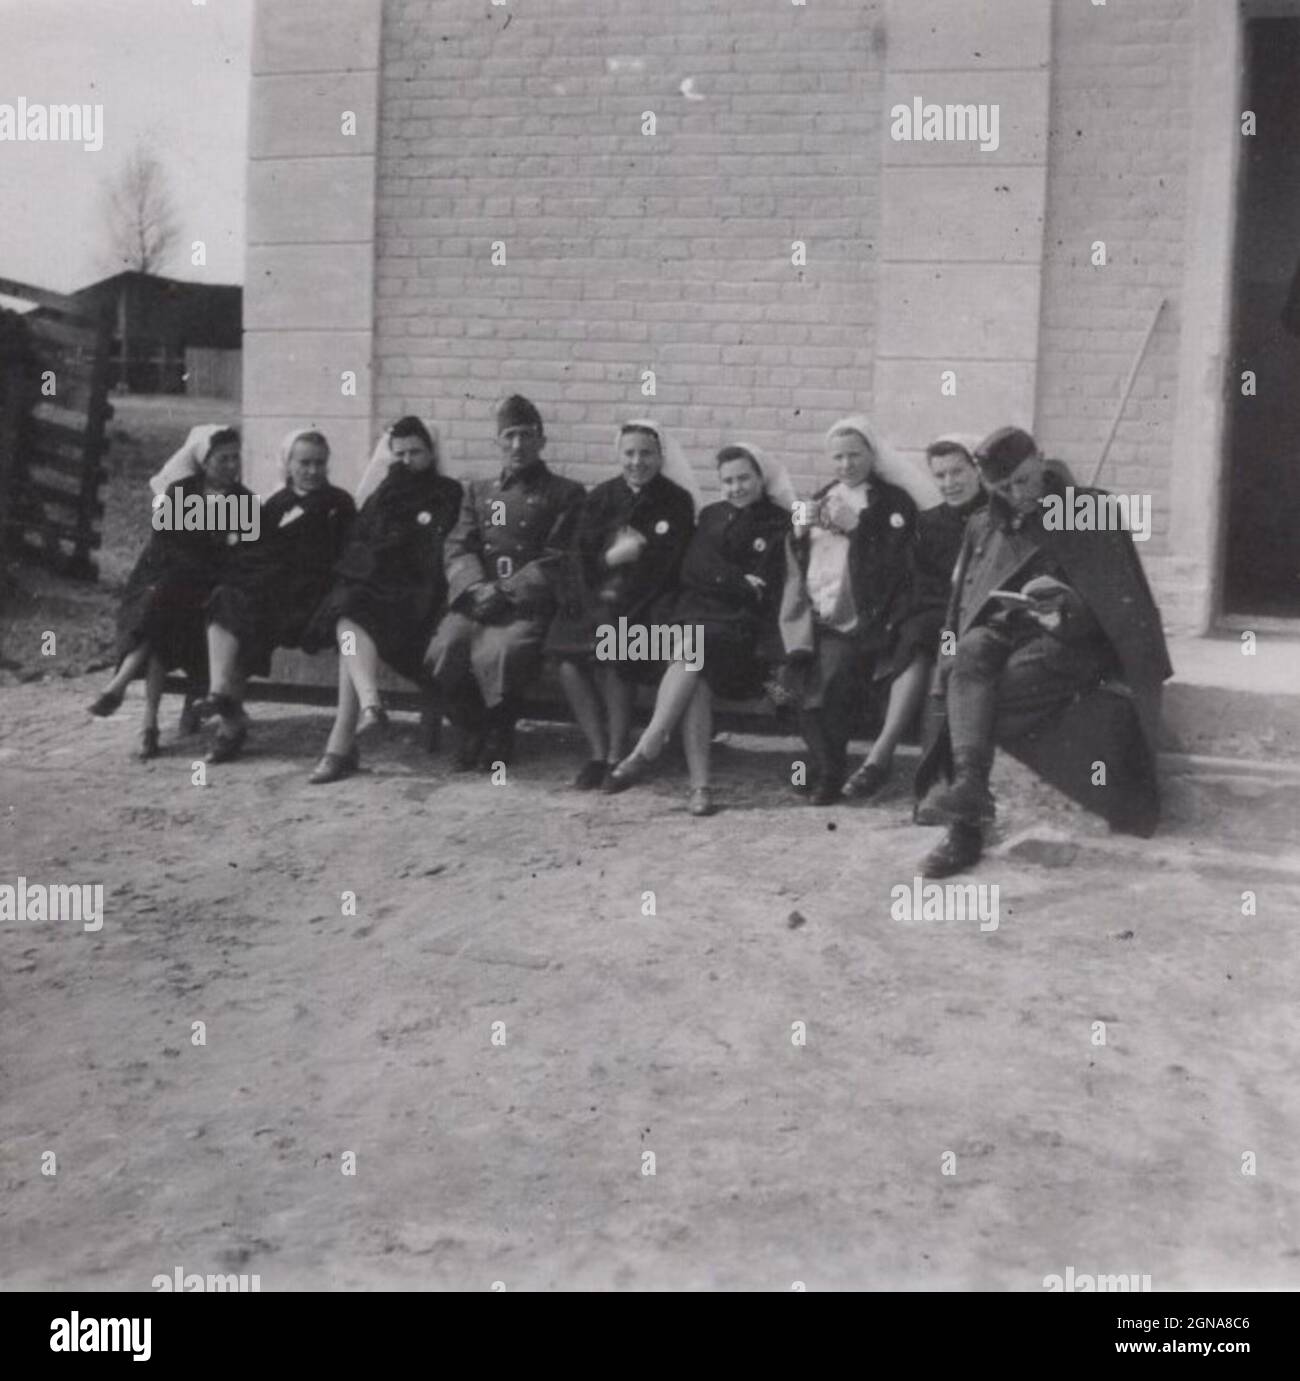 Seltener historischer Moment aus dem Zweiten Weltkrieg. Zwei Soldaten sitzen unter Krankenschwestern auf der Bank vor einem Haus oder einer Kirche. Die Krankenschwestern lächeln, essen, ruhen sich aus. Ein Soldat konzentriert sich auf den Fotografen, der andere gibt keinen Wurf, den er gerade liest. Zeitraum des 2. Weltkrieges. Quelle: Originalfoto (militärisches Subject) Stockfoto